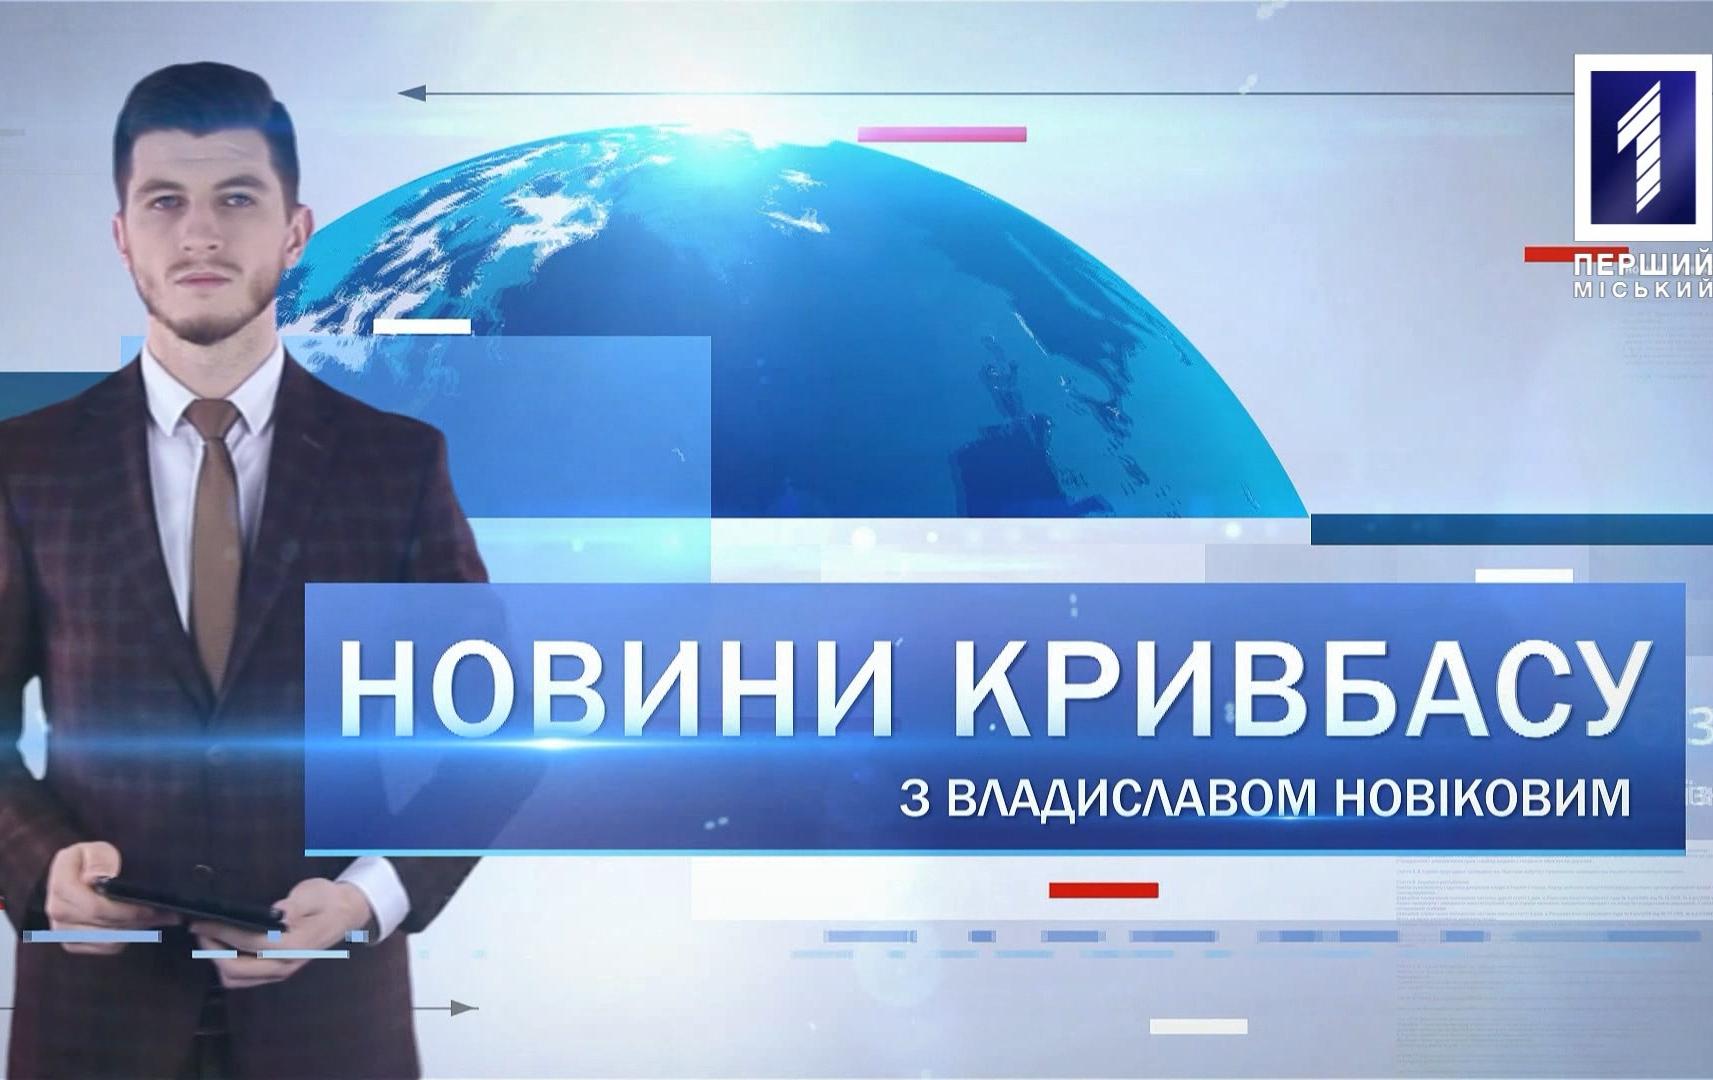 Новини Кривбасу 19 лютого 2020: затримали підозрюваного у вбивстві, «Зелена стратегія», цвітіння рослин